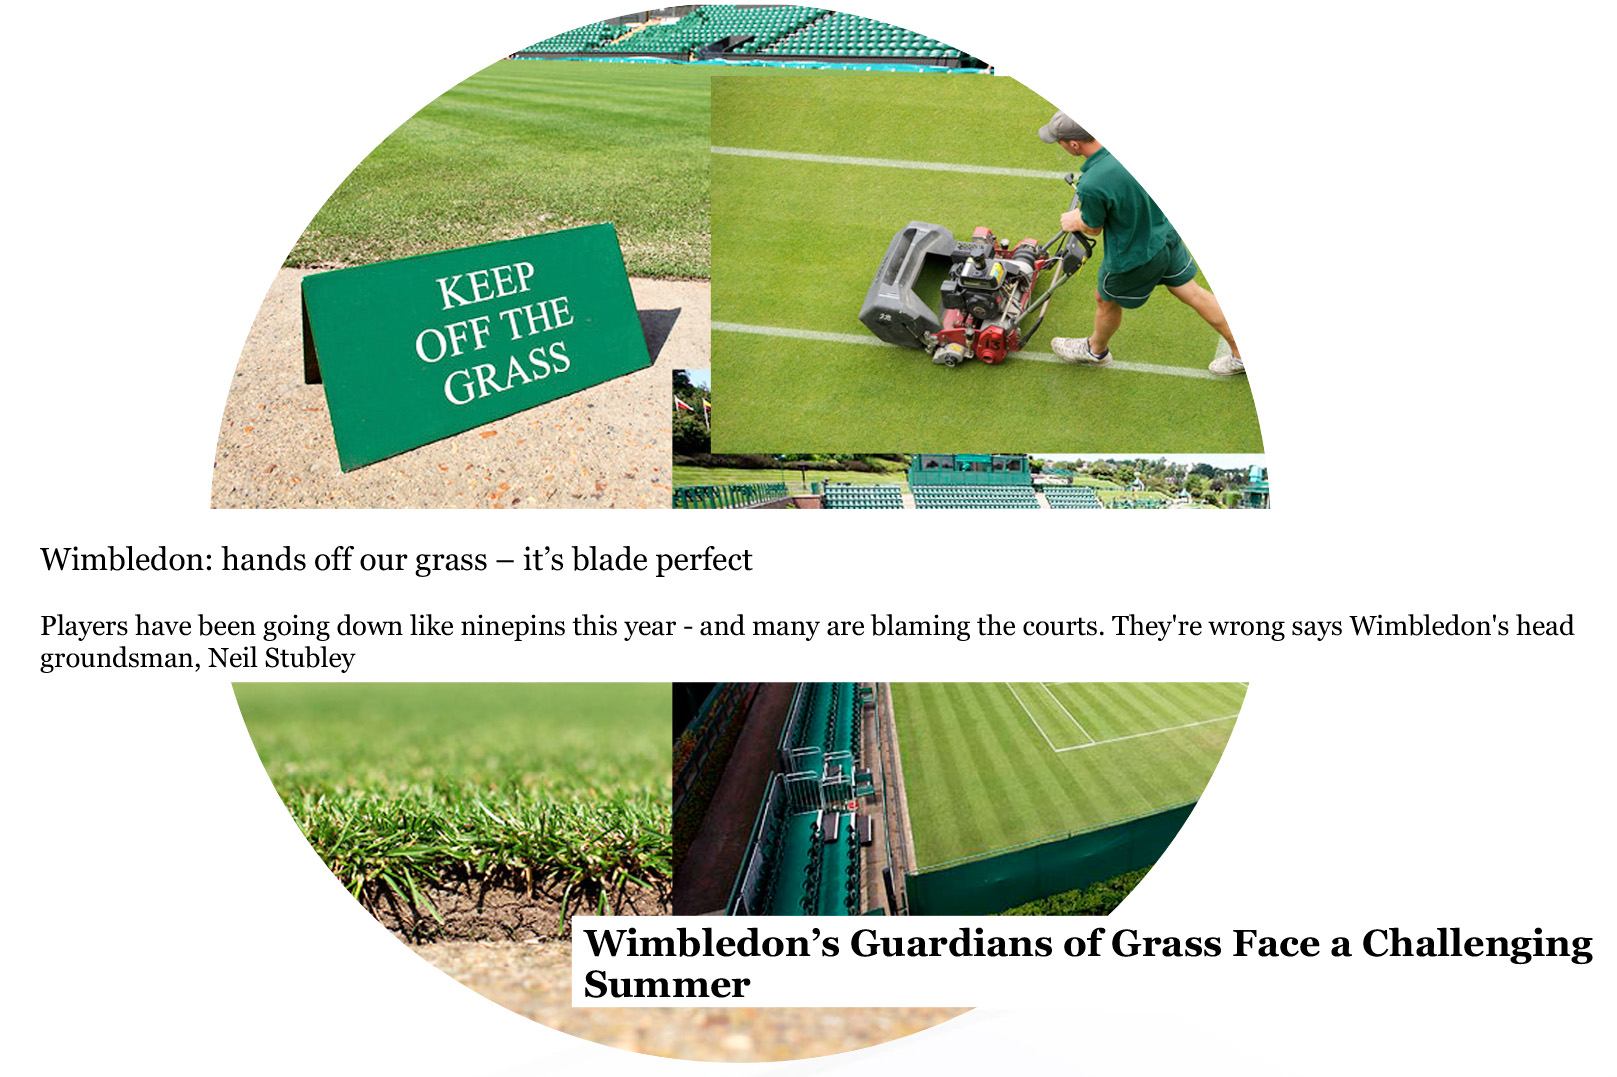 Wimbledon Grass